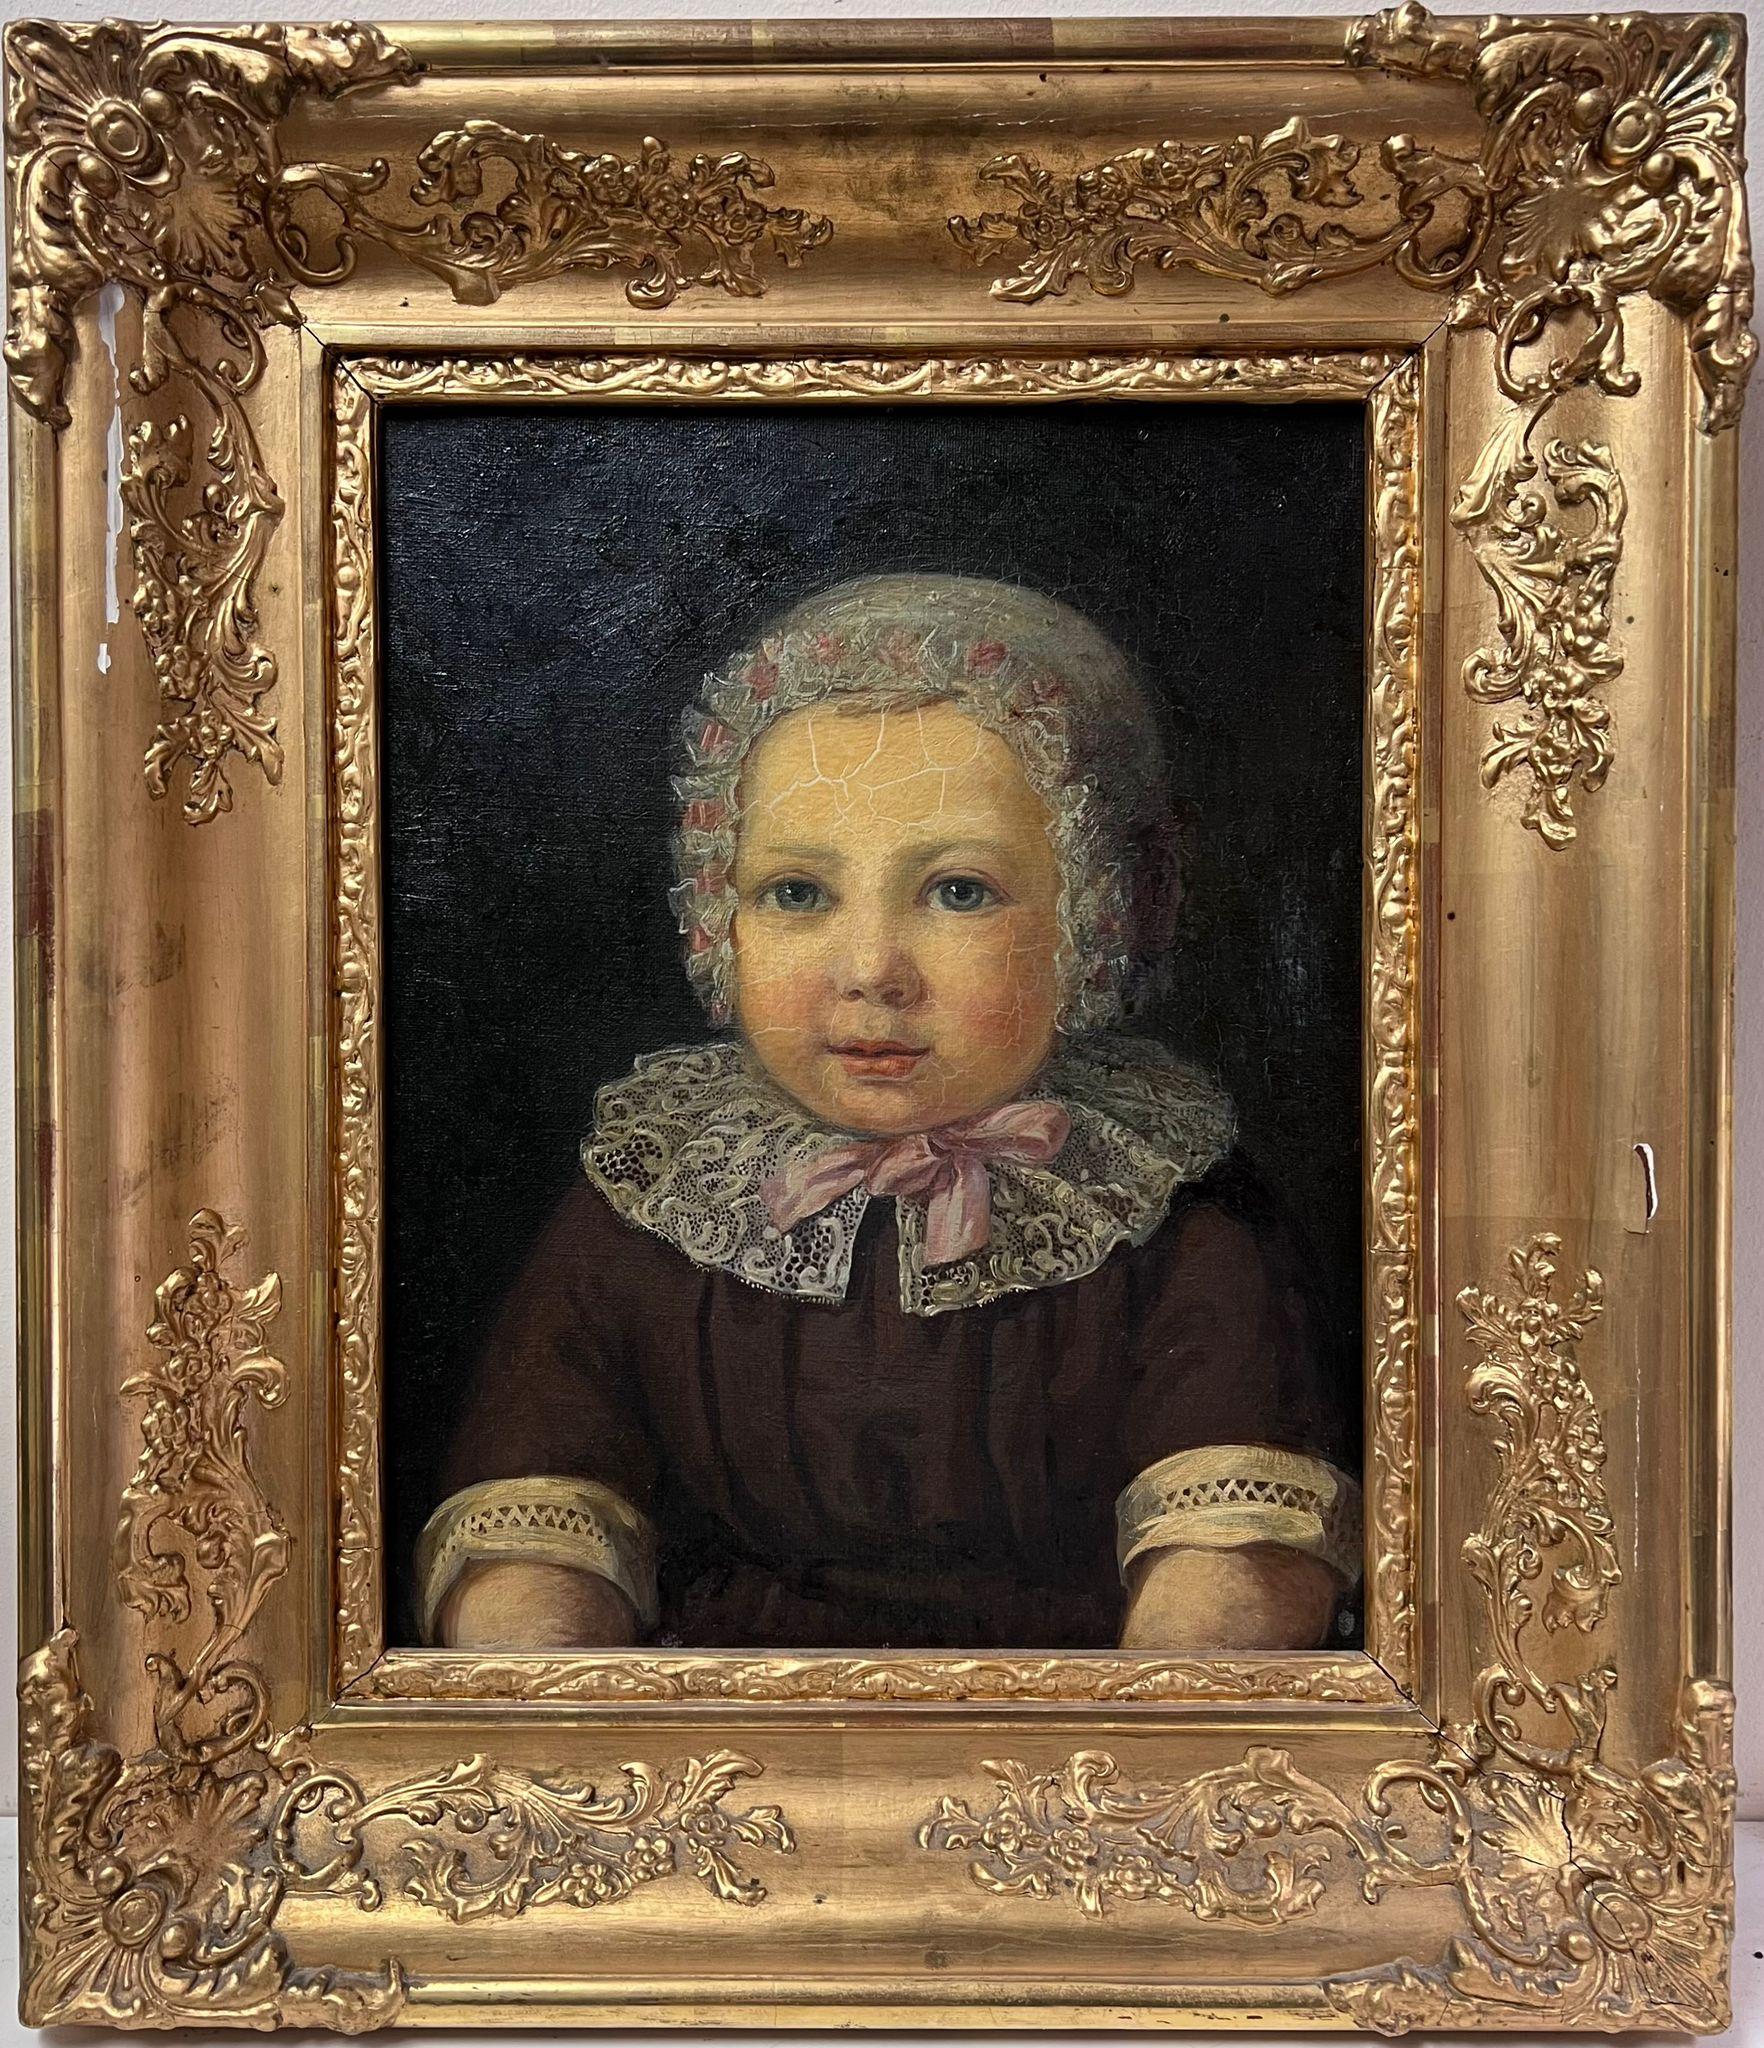 European Antique Portrait Painting - Portrait of Young Child Antique European Oil Painting Fine Gilt Frame